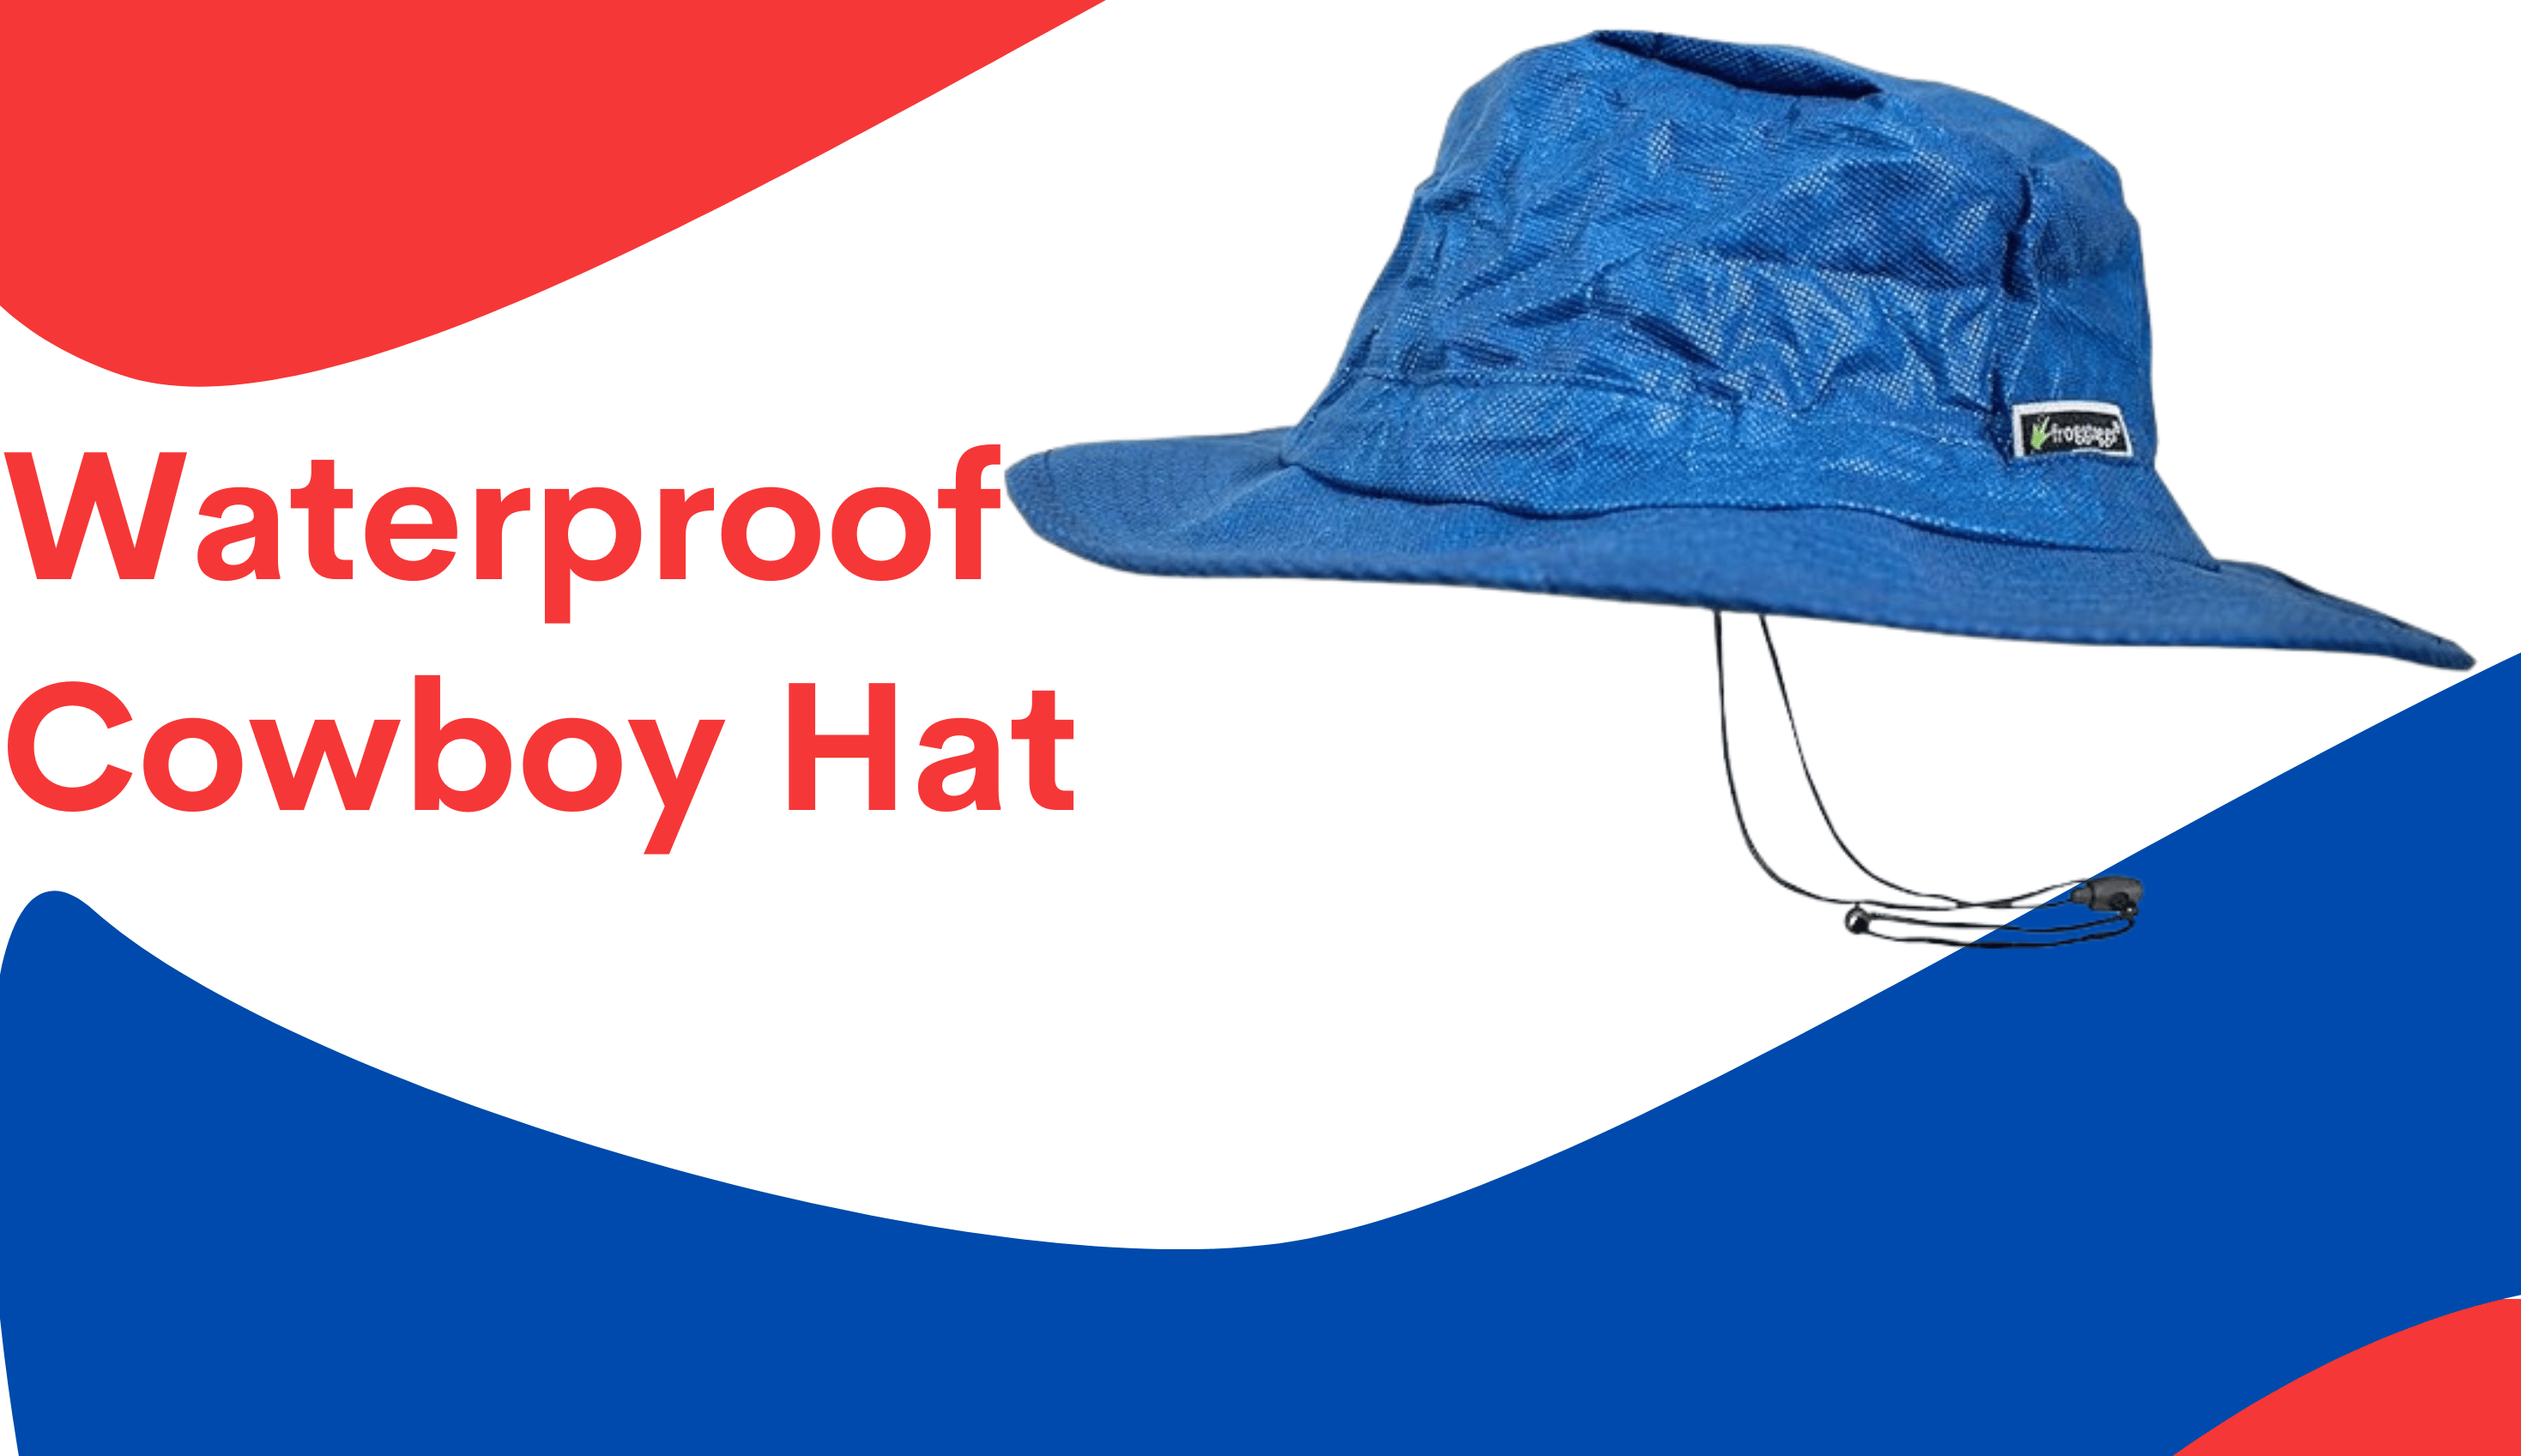 Waterproof Cowboy Hat